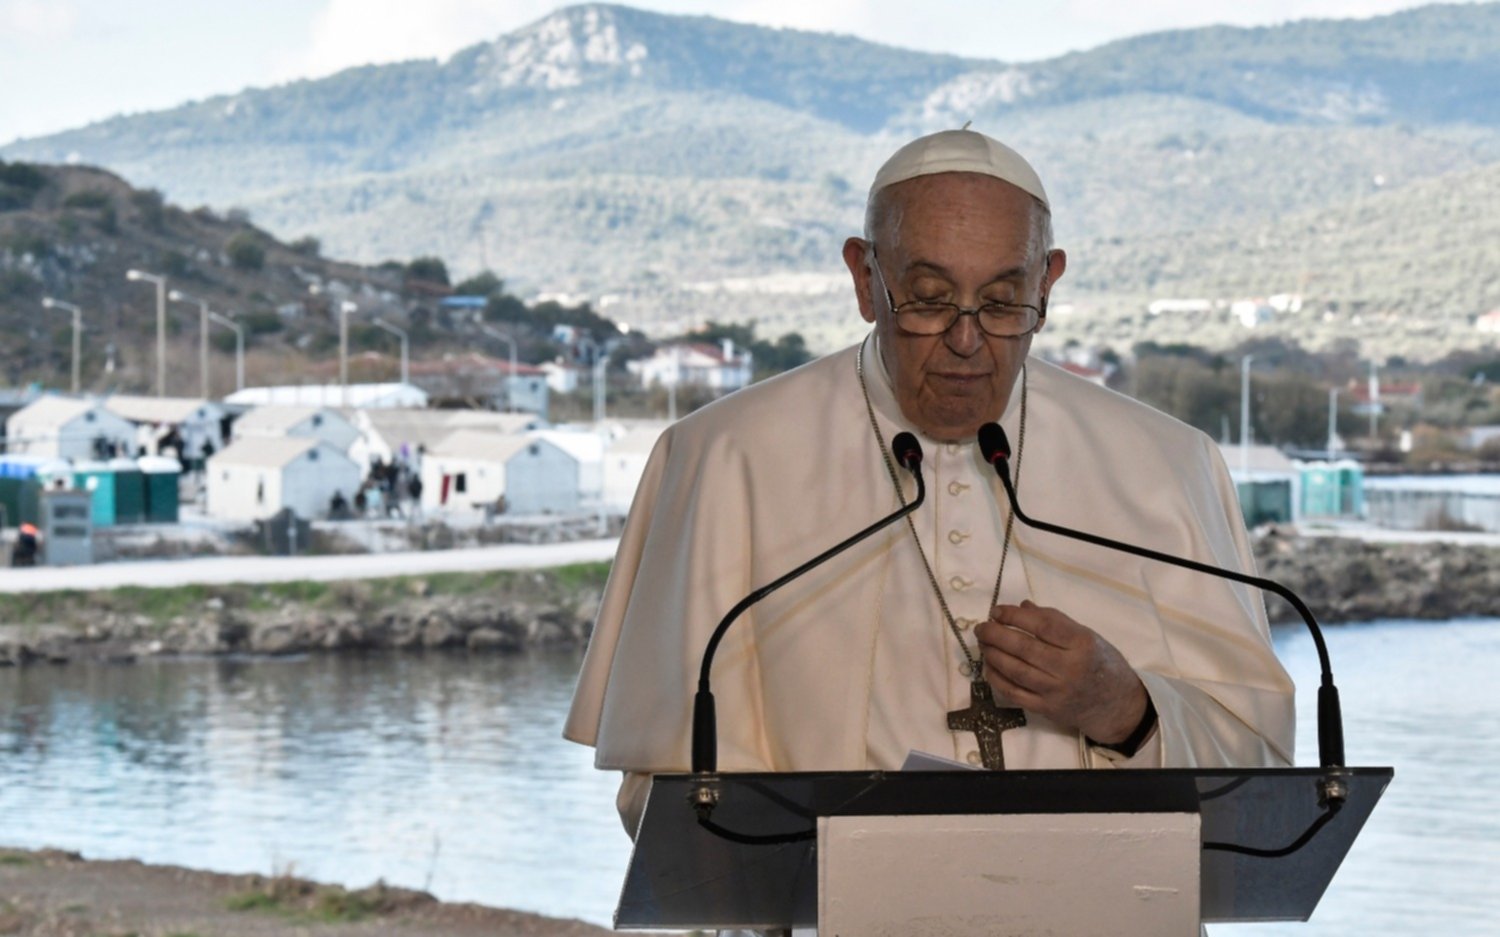 El mensaje de Francisco desde la isla de Lesbos: "Cuando se rechaza a los pobres, se rechaza la paz"